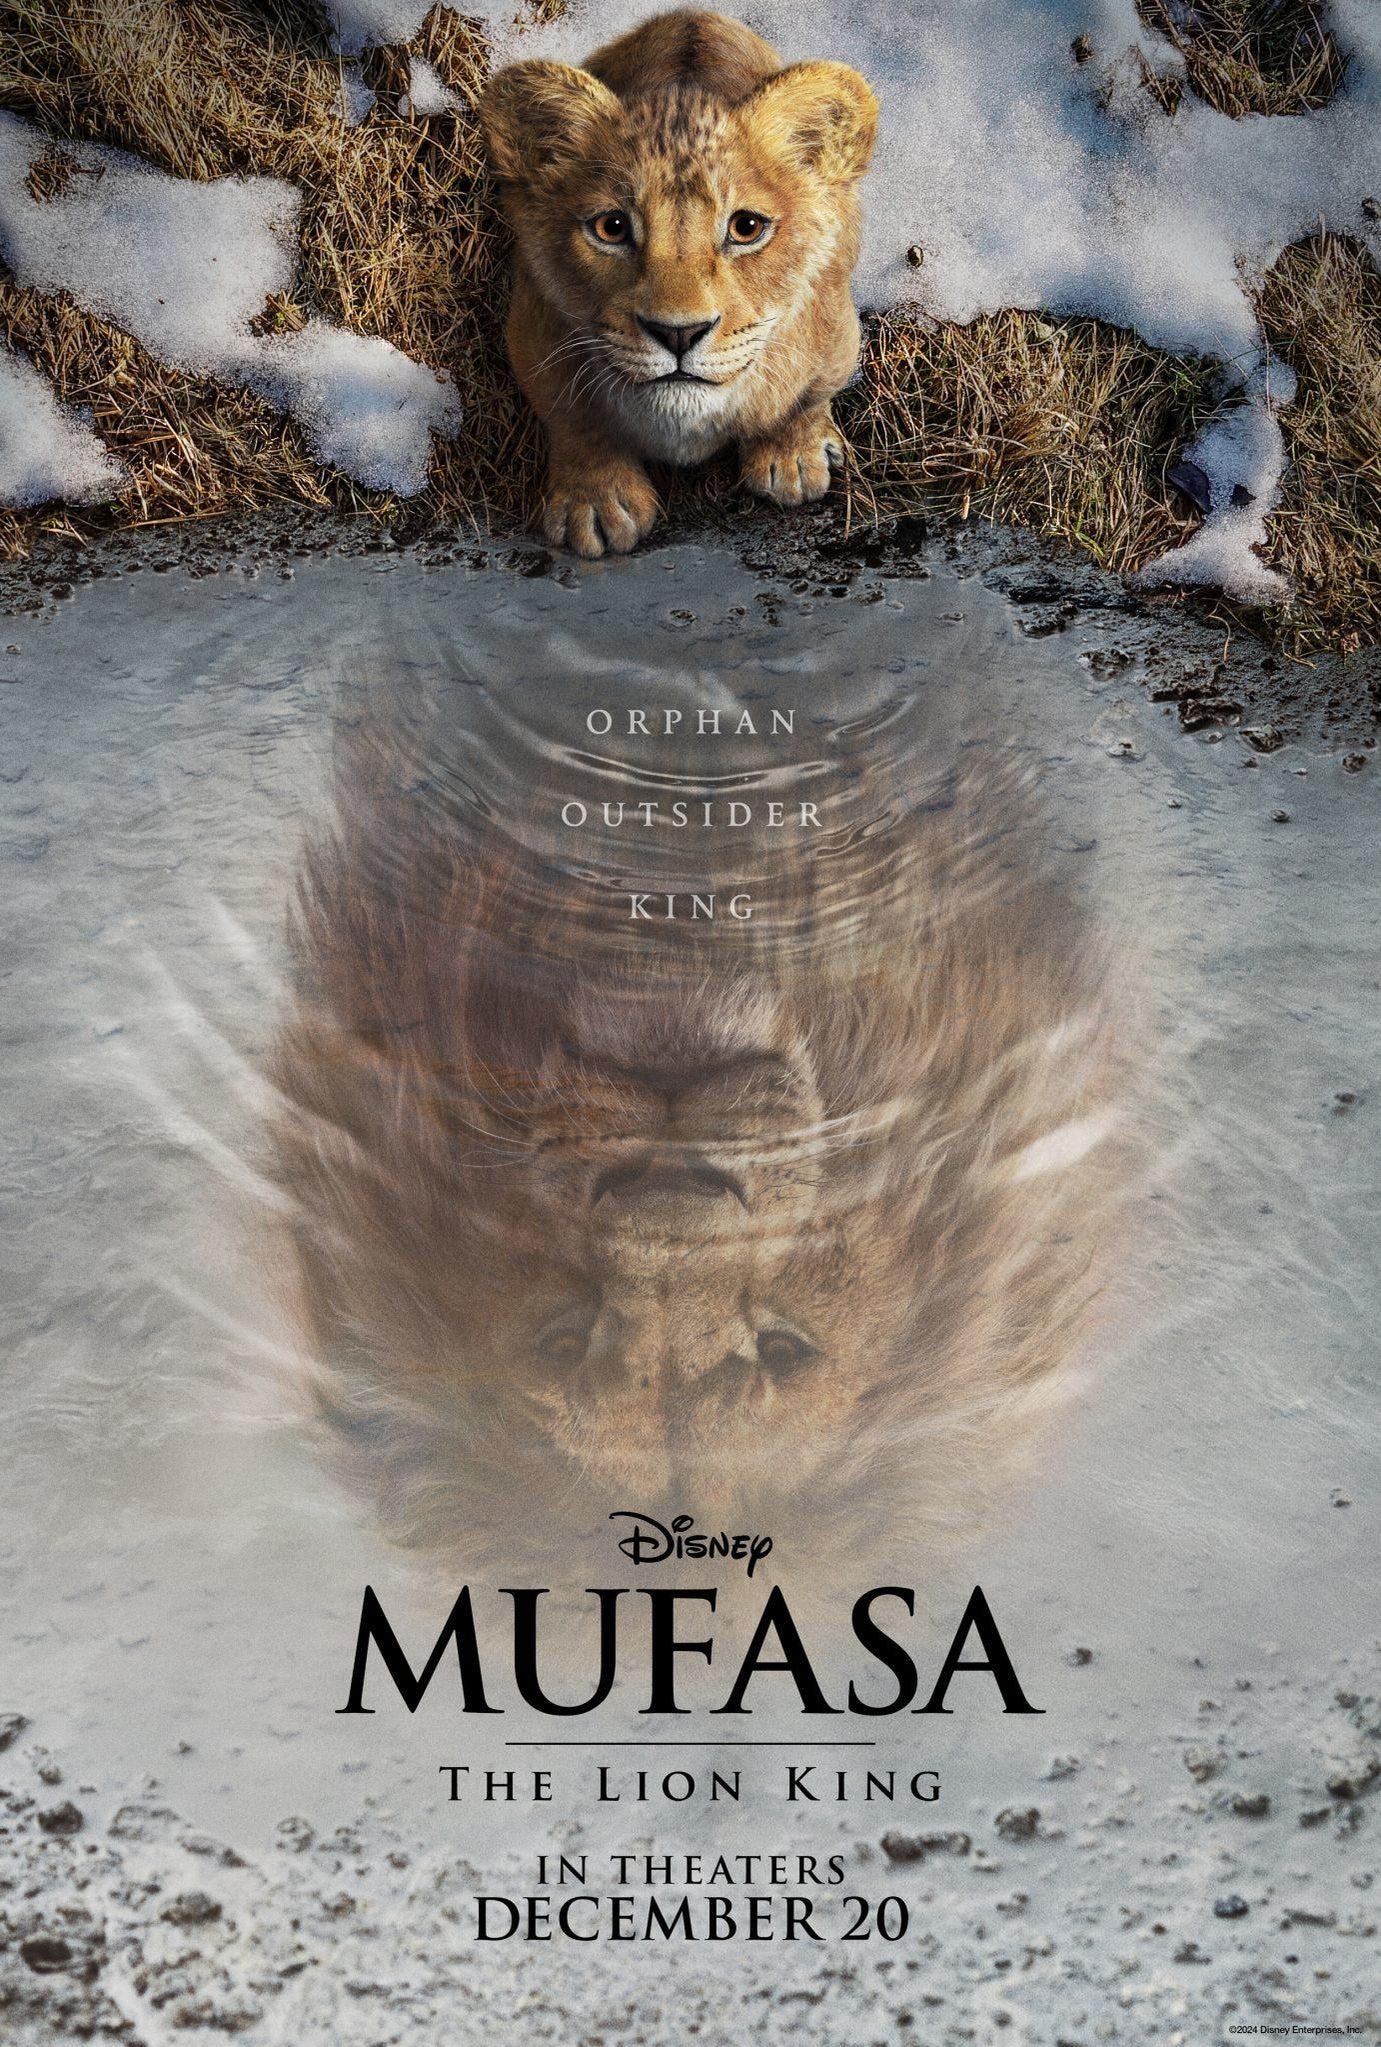 mufasa-teaser-digital-1sheet-v1-lg-1382x2048.jpg